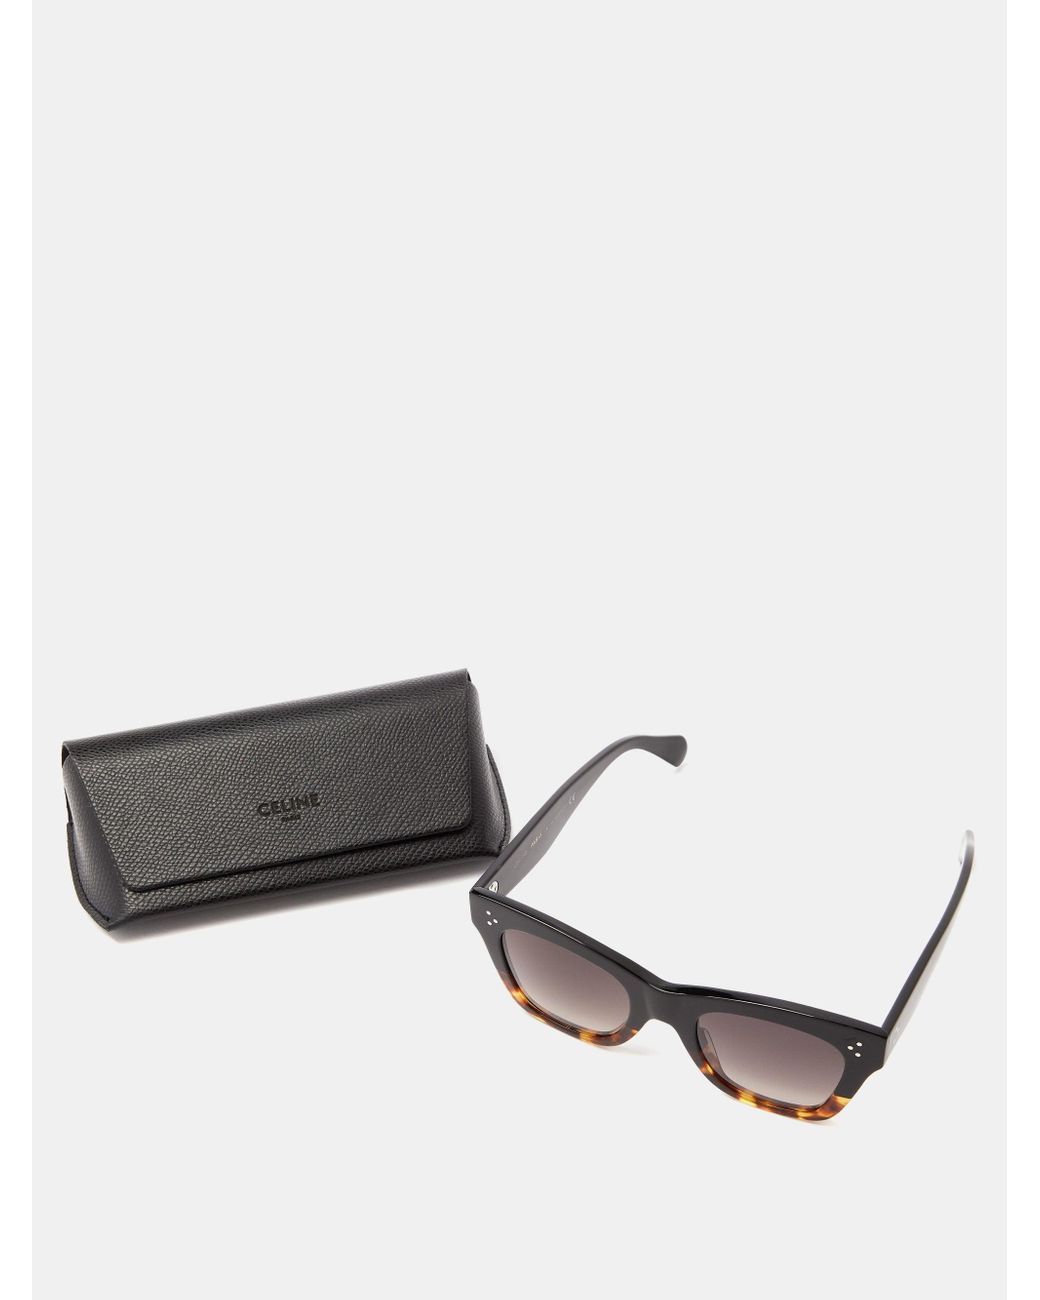 Celine Gradient Square Acetate Sunglasses in Brown | Lyst Canada